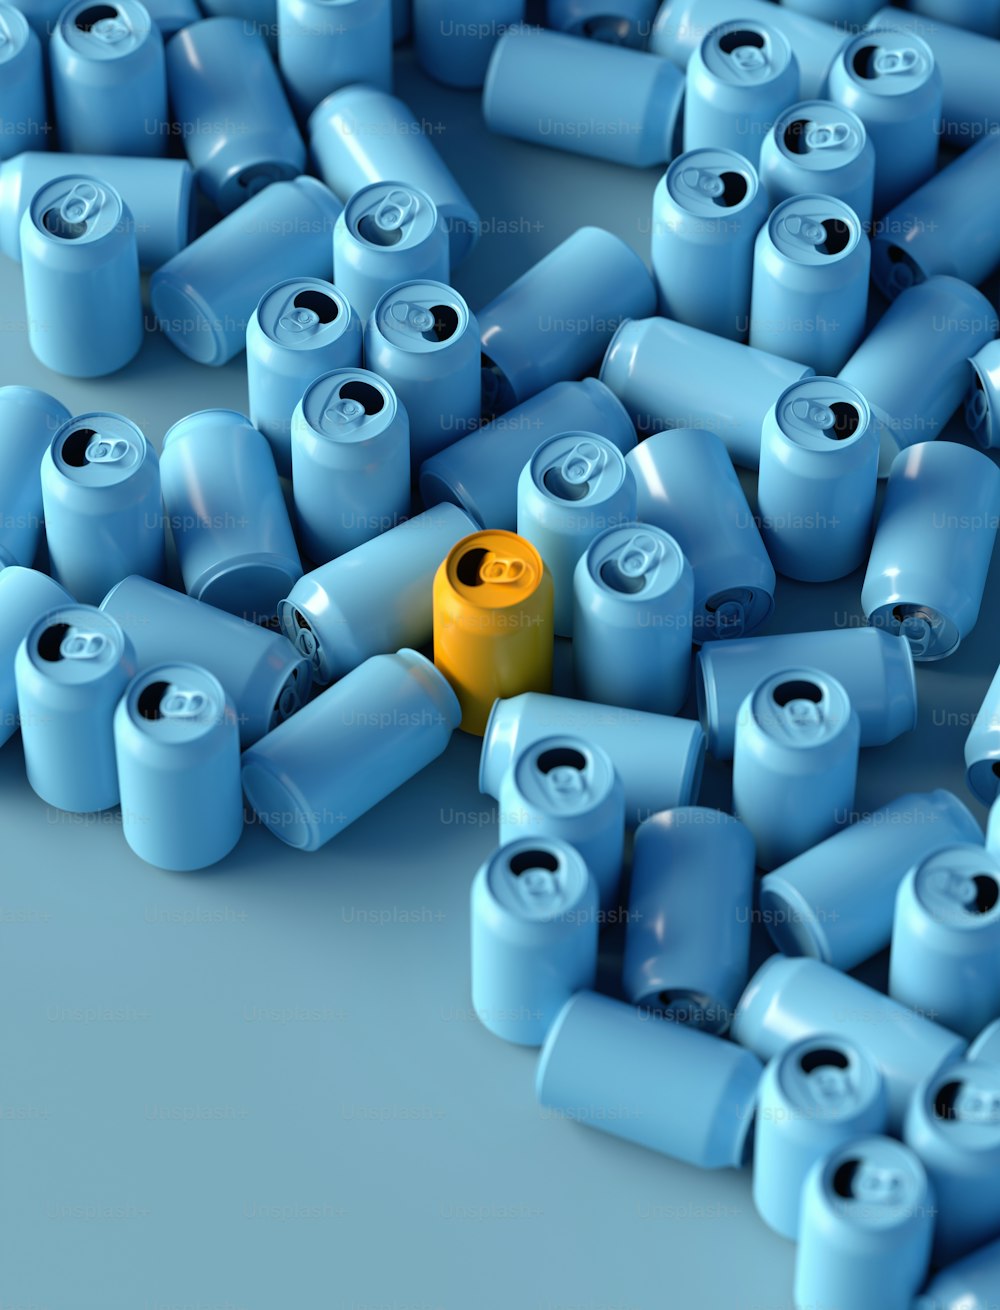 Ein gelbes Objekt ist von vielen blauen Objekten umgeben